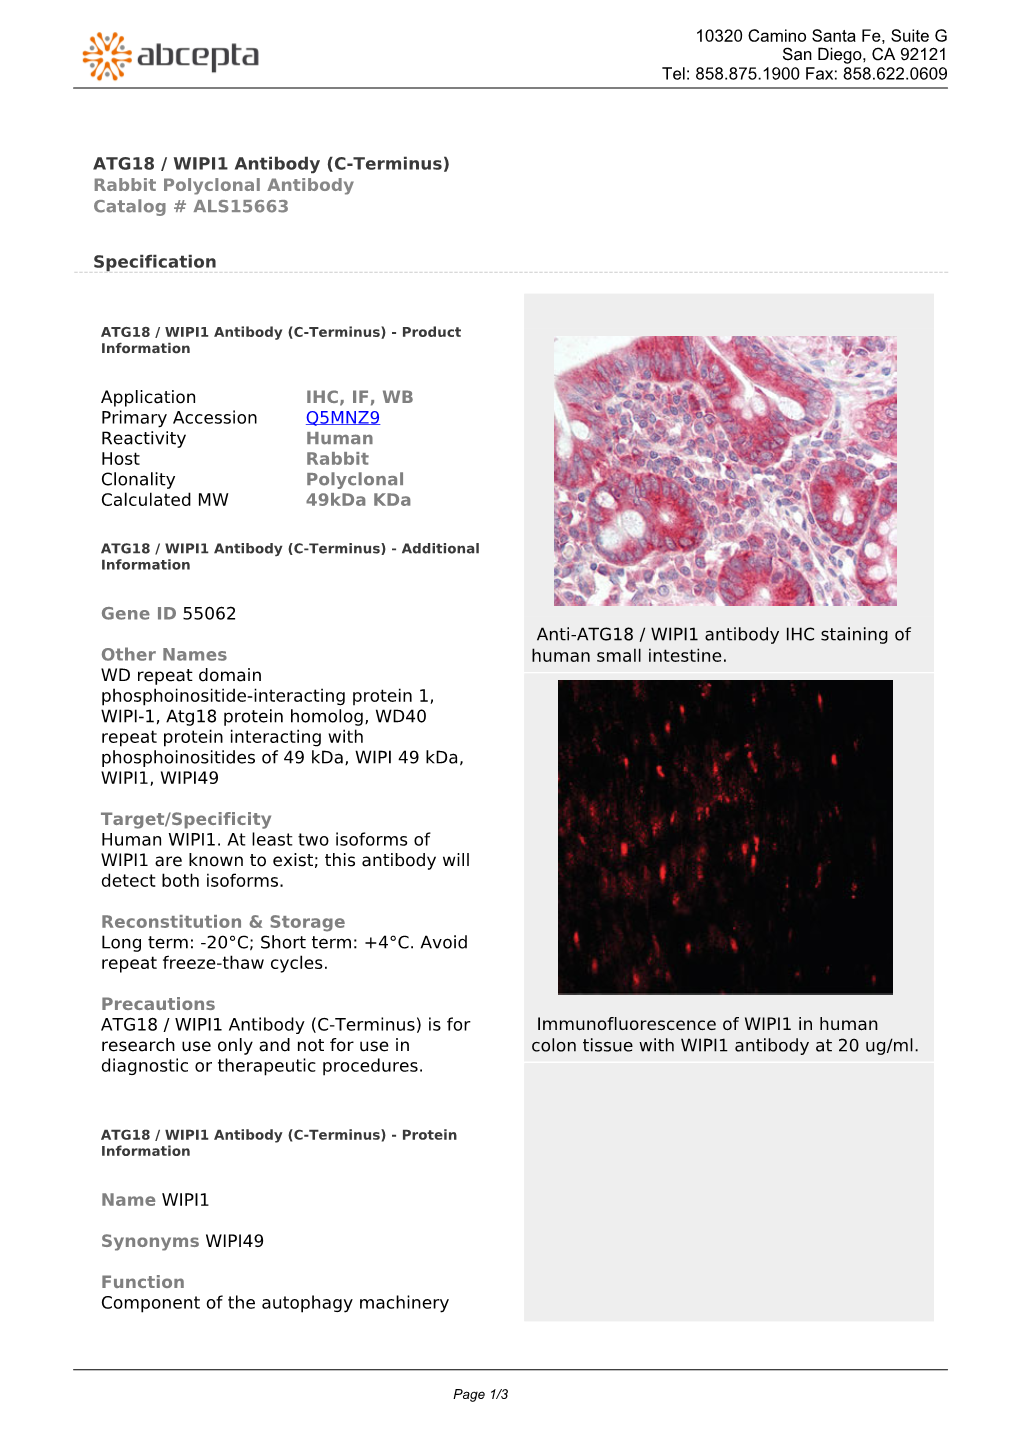 ATG18 / WIPI1 Antibody (C-Terminus) Rabbit Polyclonal Antibody Catalog # ALS15663